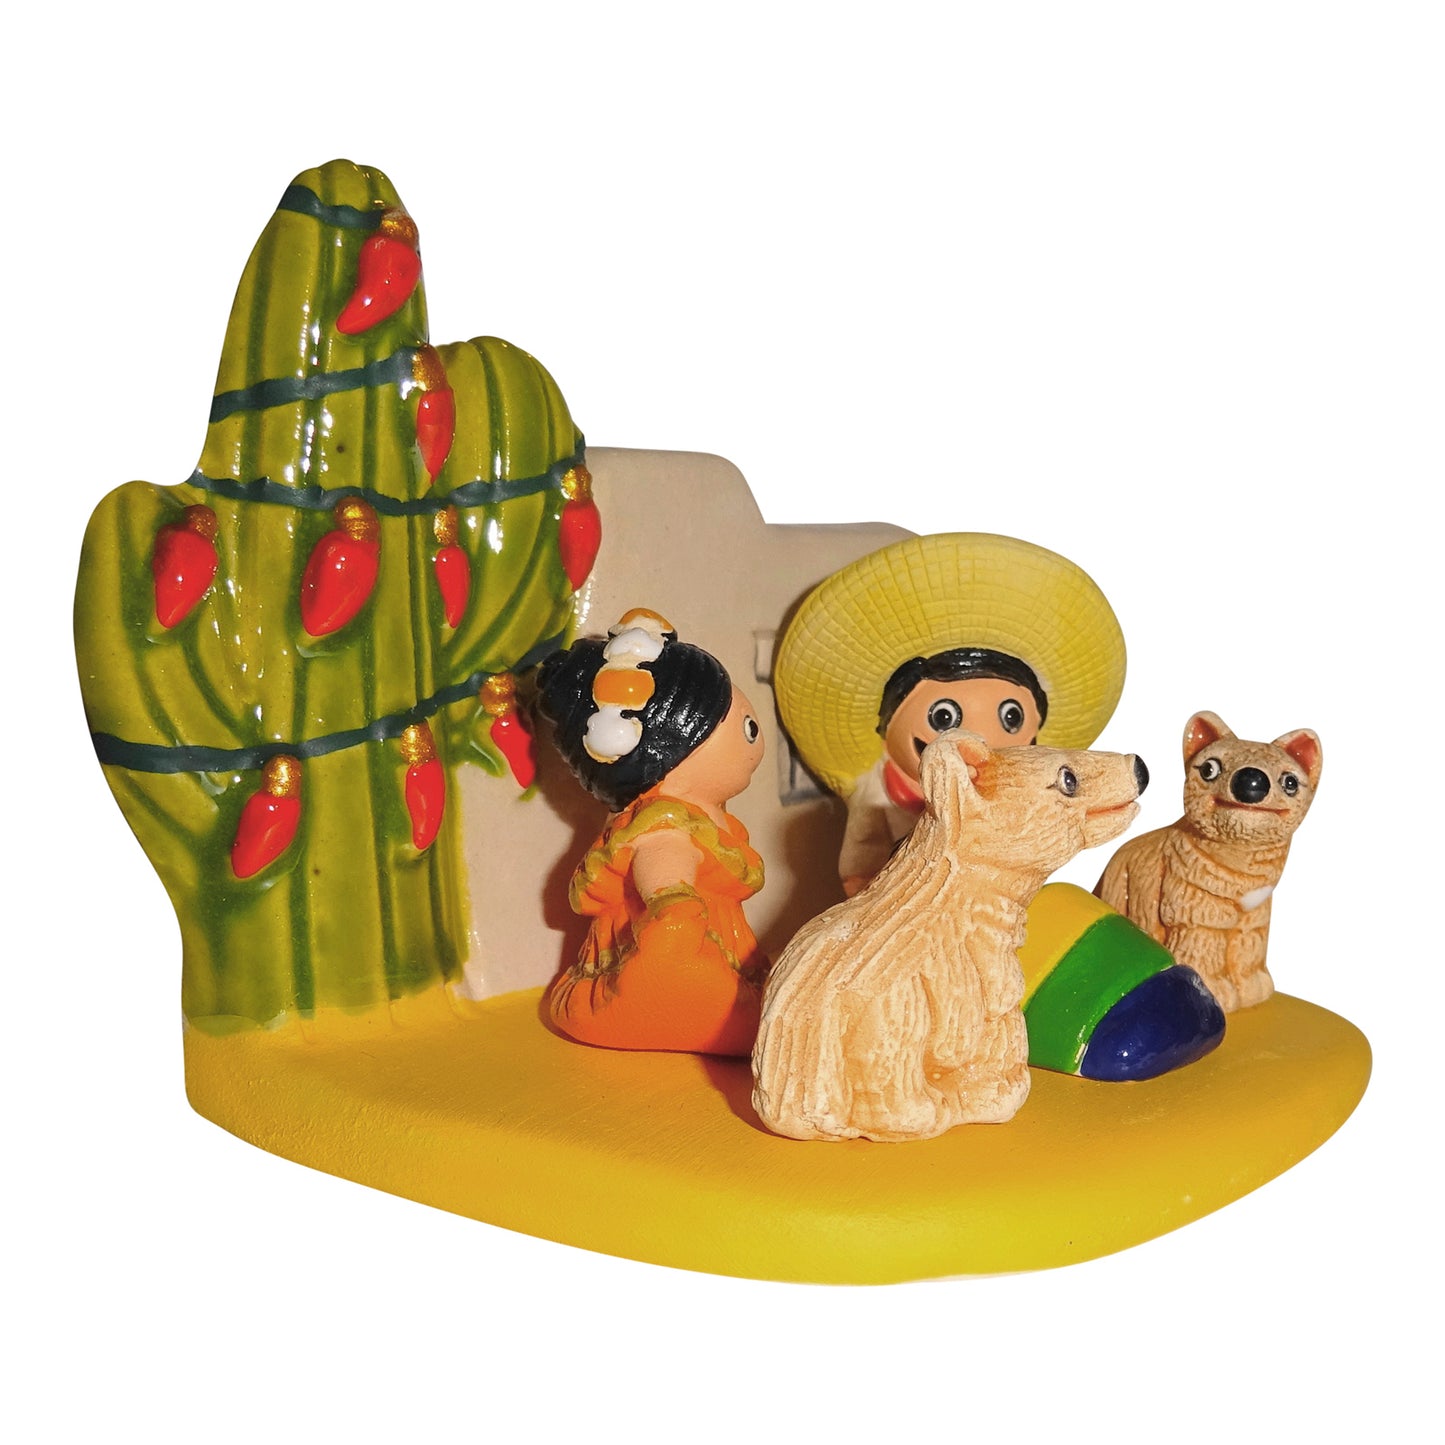 Mexico Nativity Small Cultural Nativity Scene Seasonal Holiday Decoration Nativities Around the World